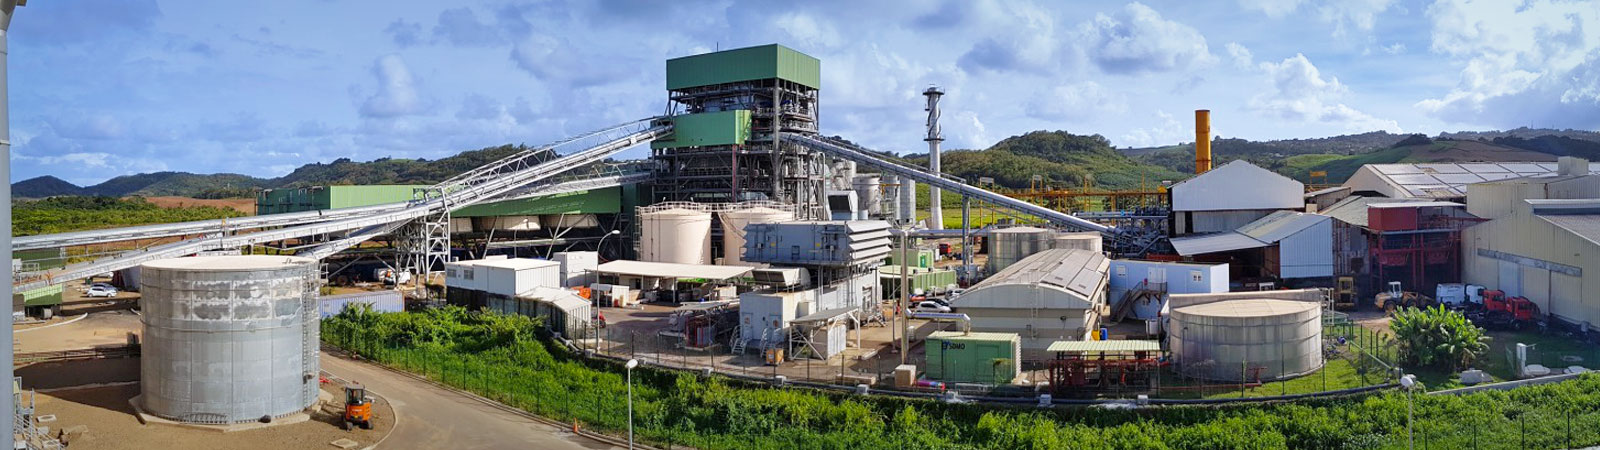 Construction de la première centrale 100% biomasse en Martinique